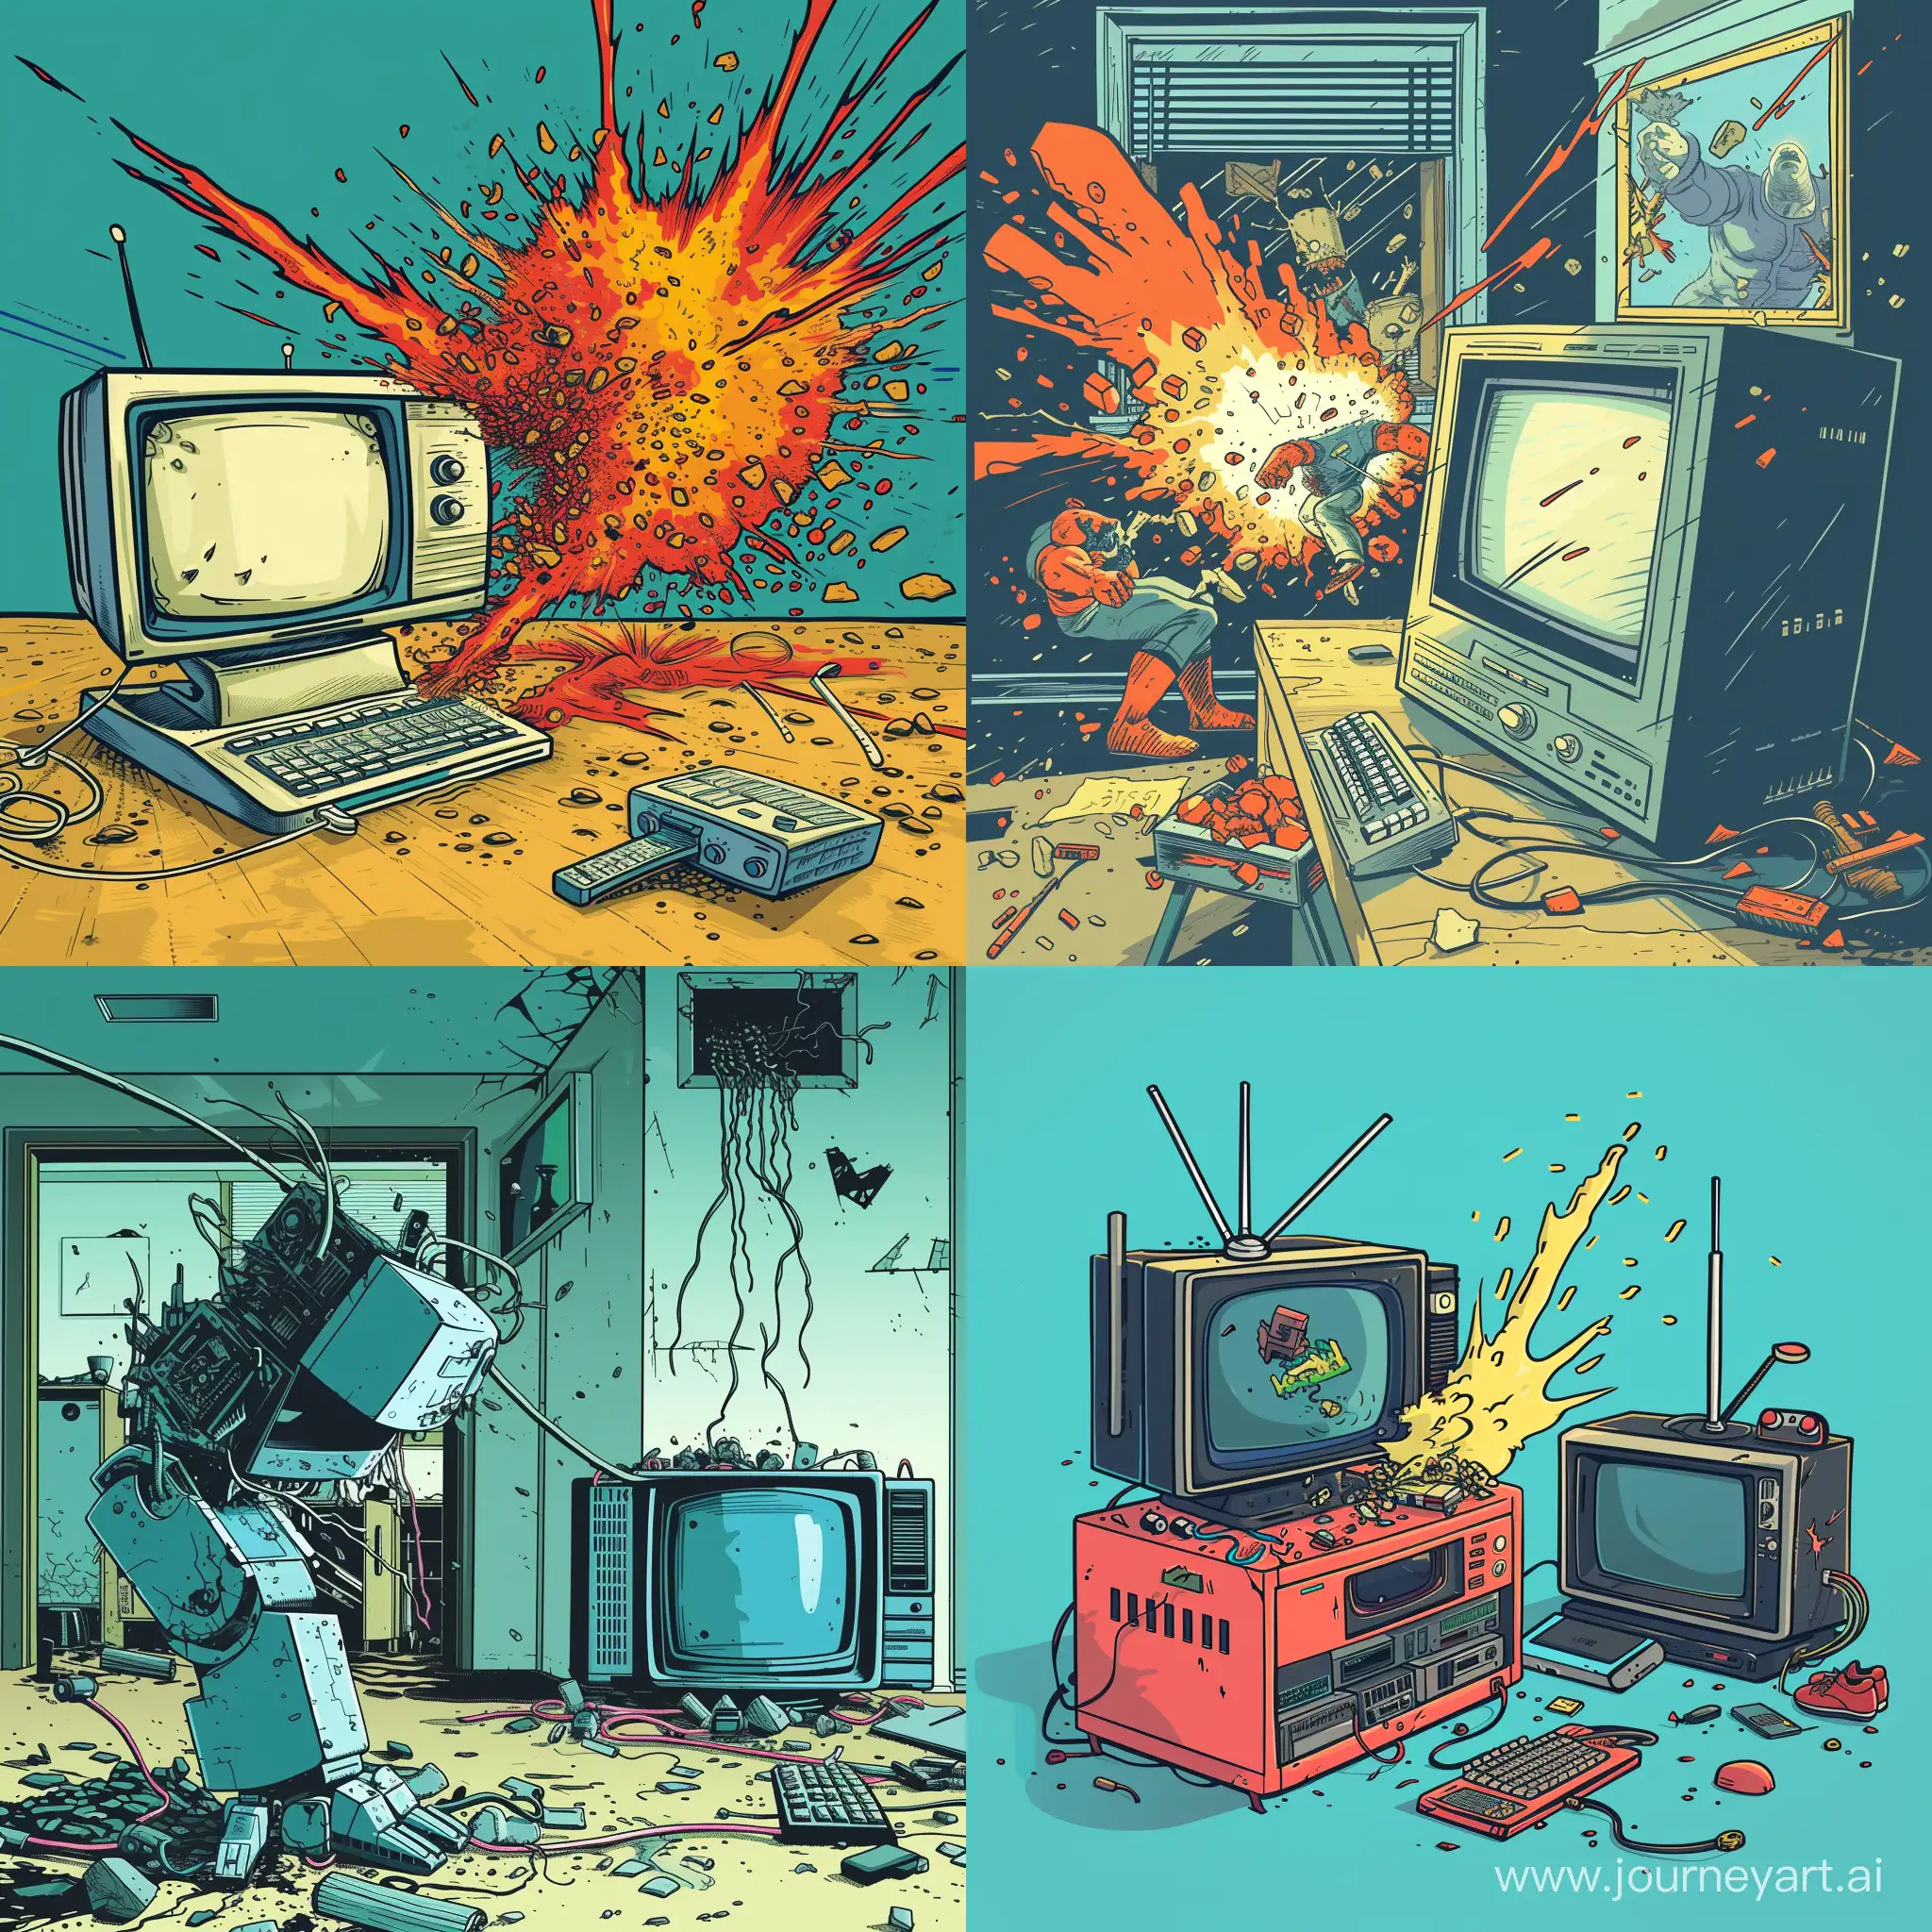 Digital-Battle-Computer-vs-Television-in-a-Comic-Showdown